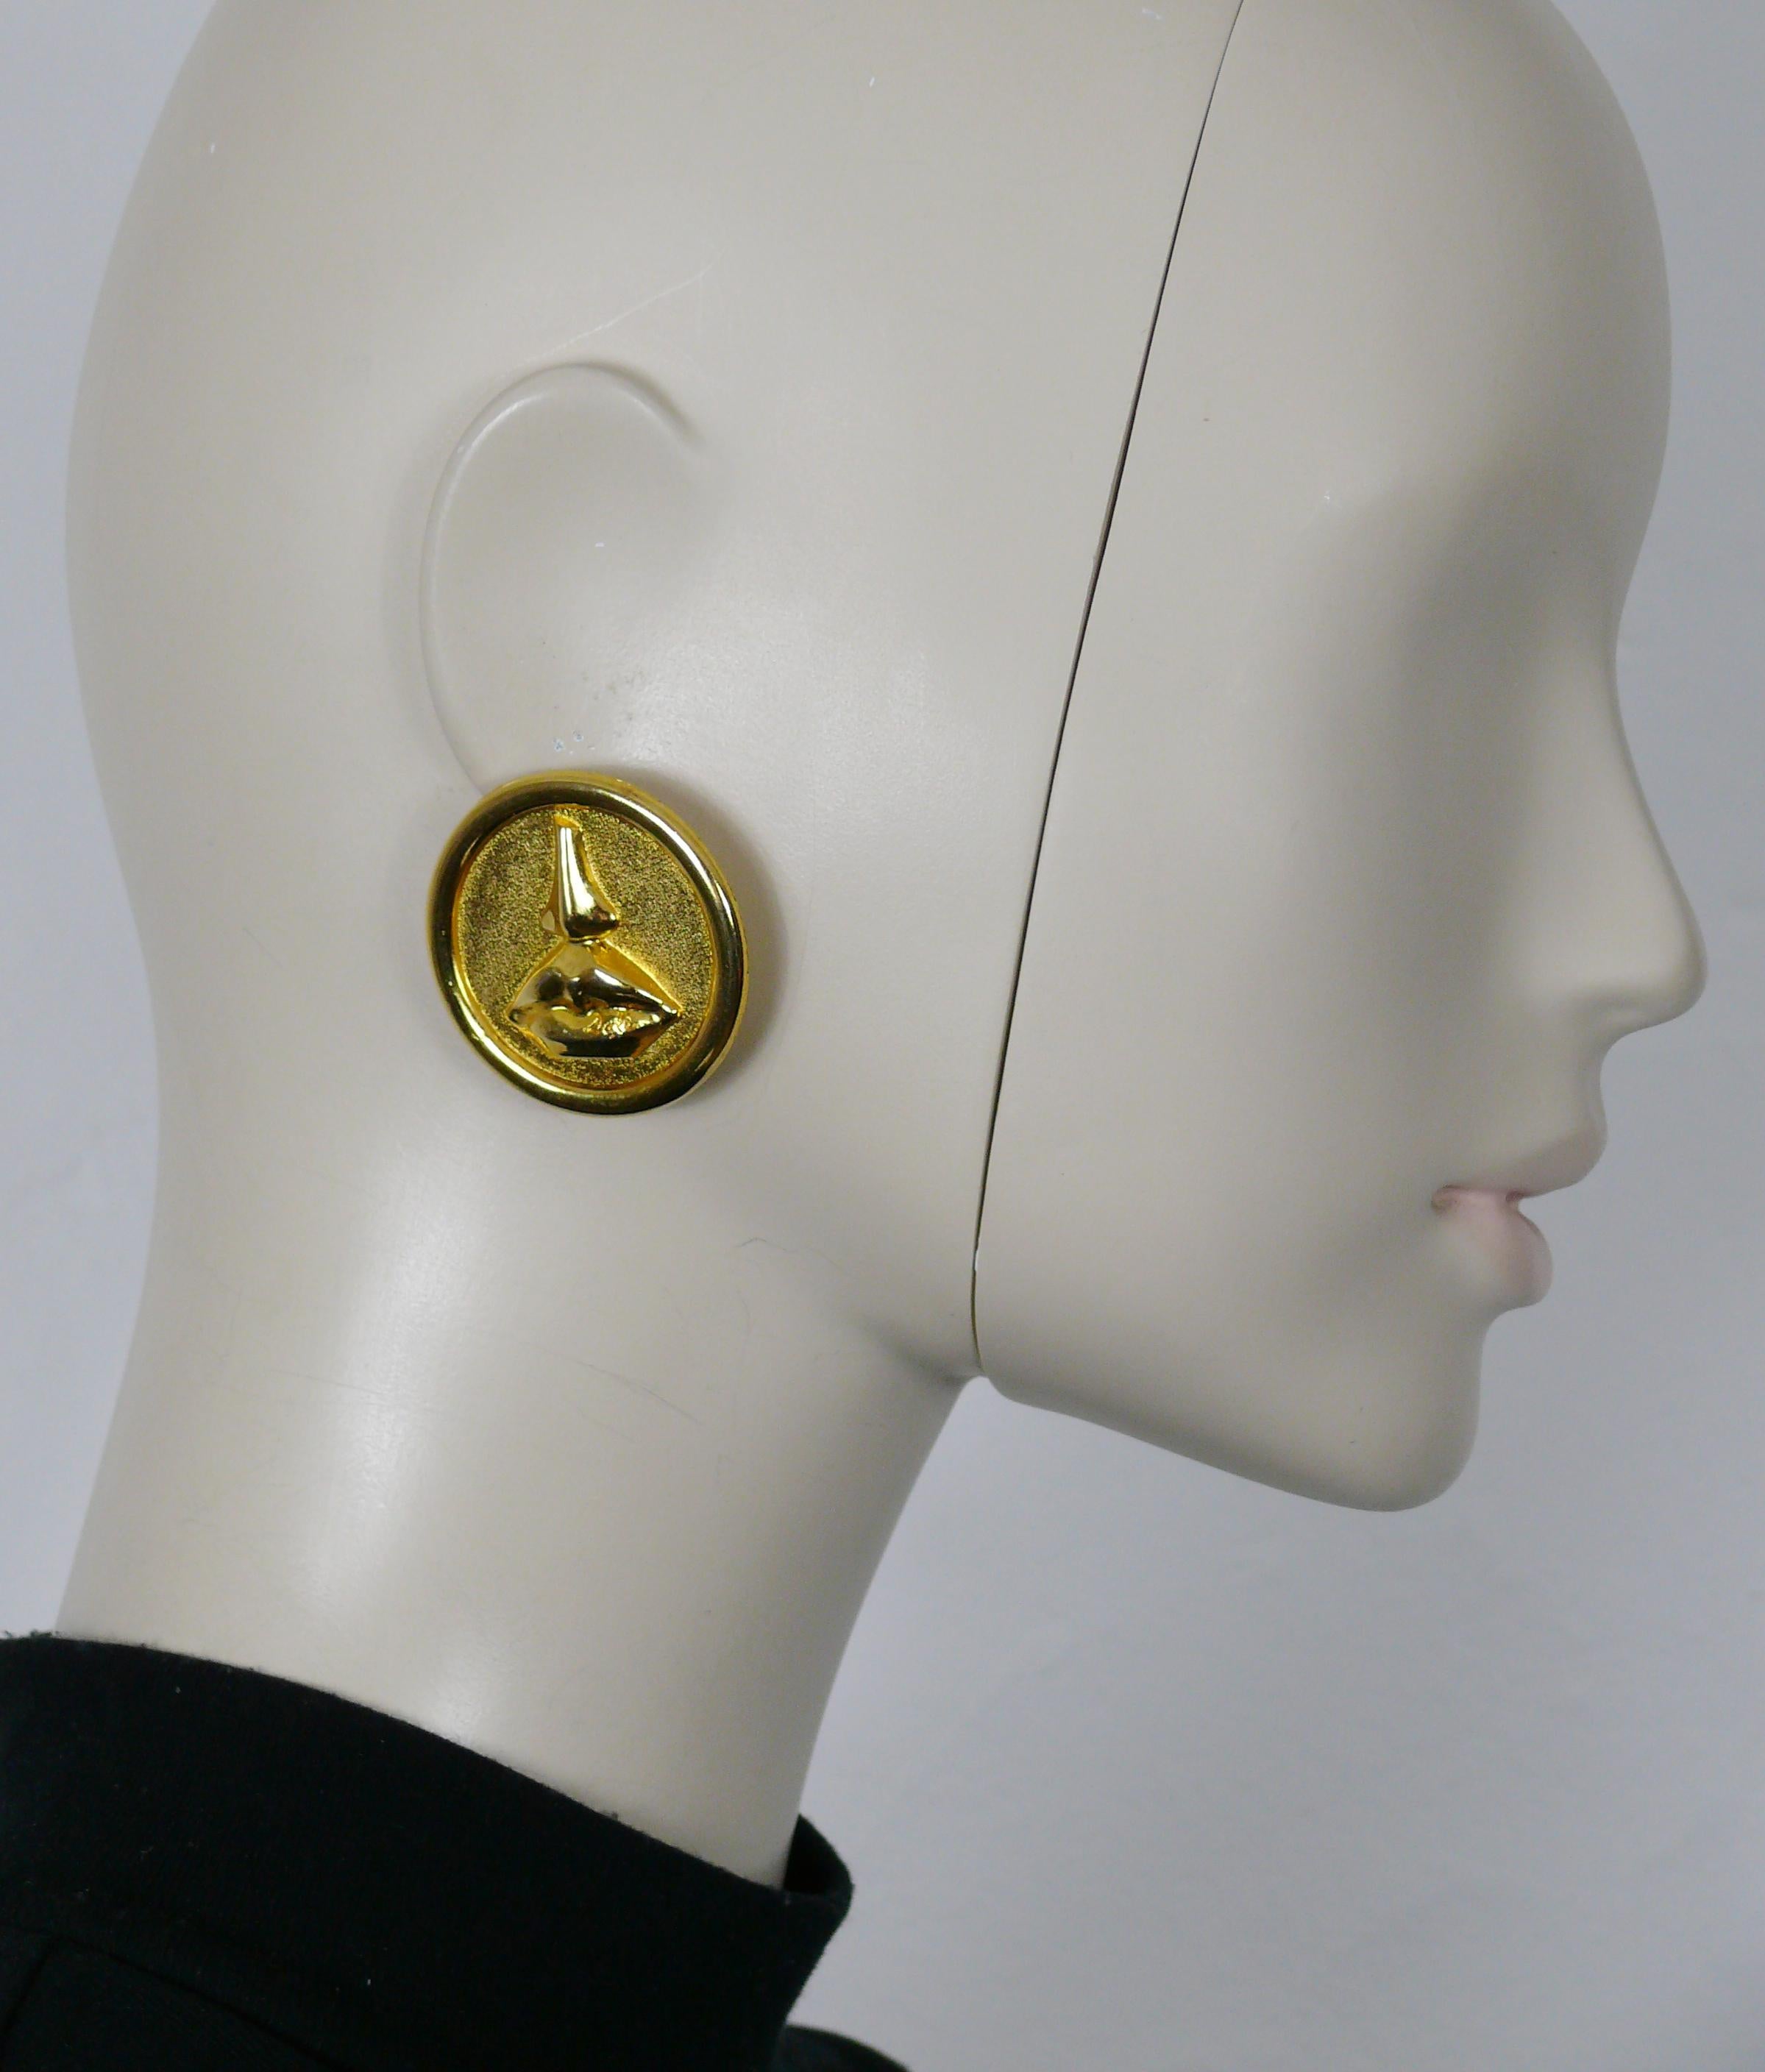 SALVADOR DALI Parfums Vintage-Ohrringe in massivem Goldton (Clip-on) mit dem ikonischen Mund und der Nase der Aphrodite von Cnidus.

Gekennzeichnet mit Promotion Parfums SALVADOR DALI.

Ungefähre Maße: Durchmesser ca. 4 cm (1,57 Zoll).

Gewicht pro